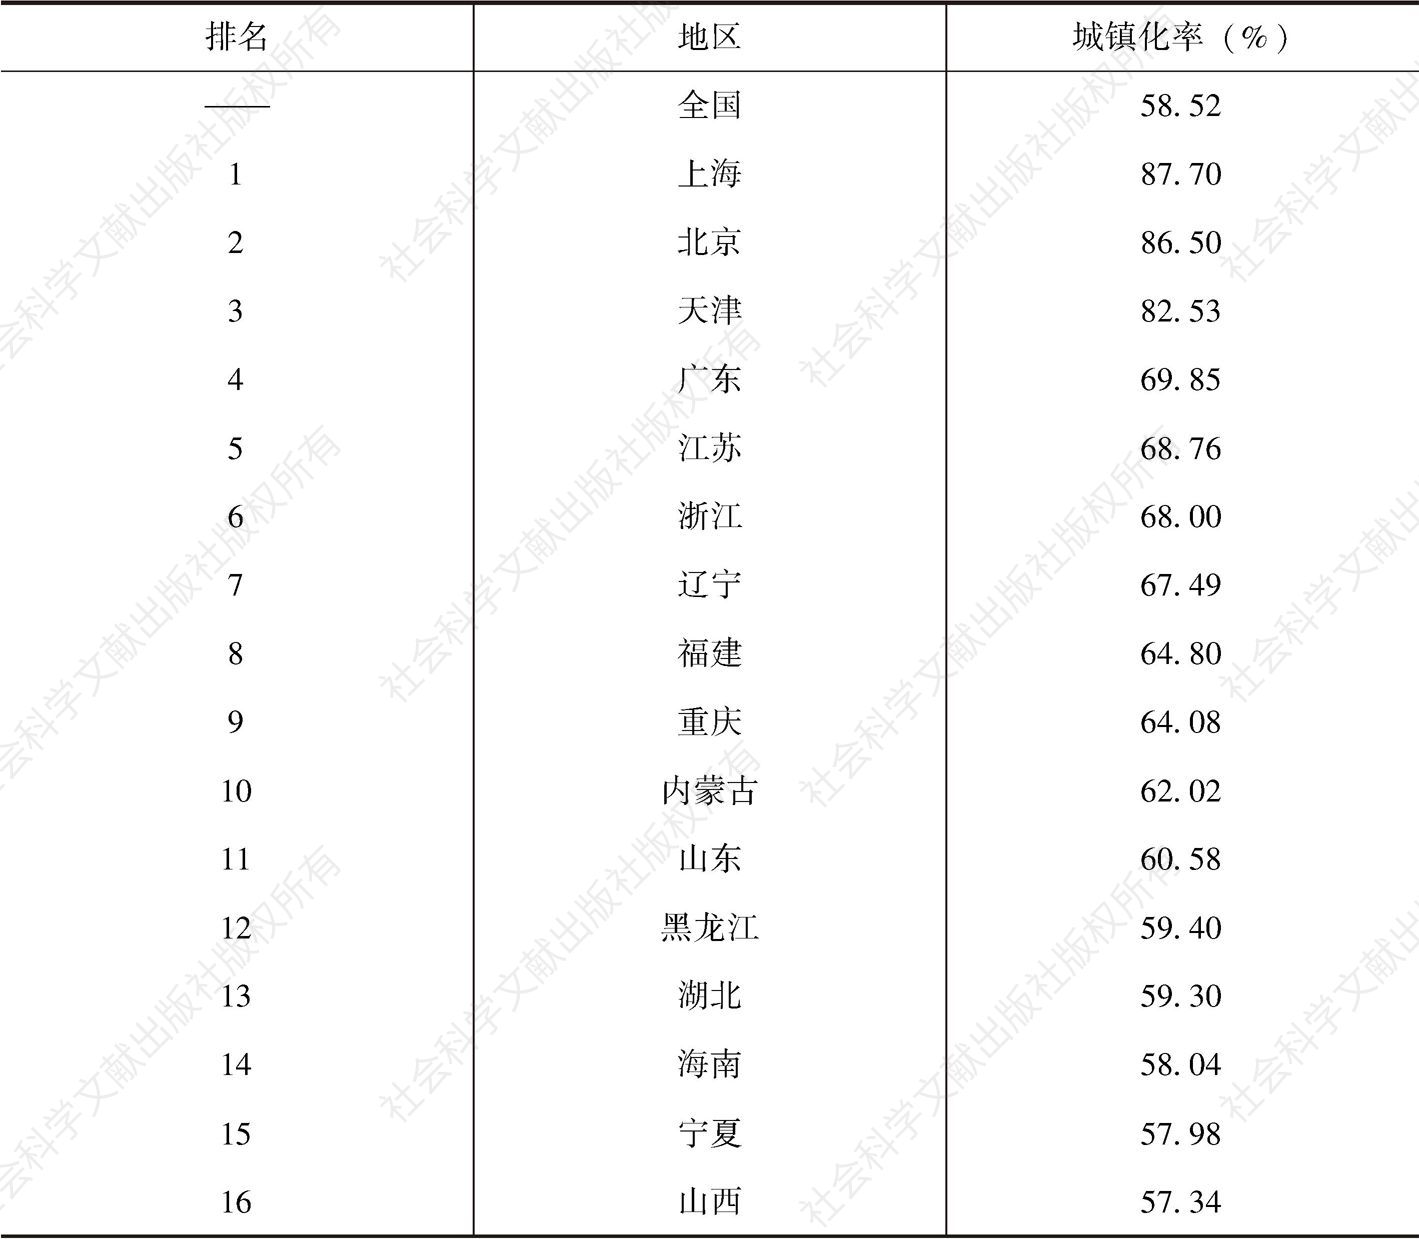 表3-1 2017年中国各省区市人口城镇化率排行榜